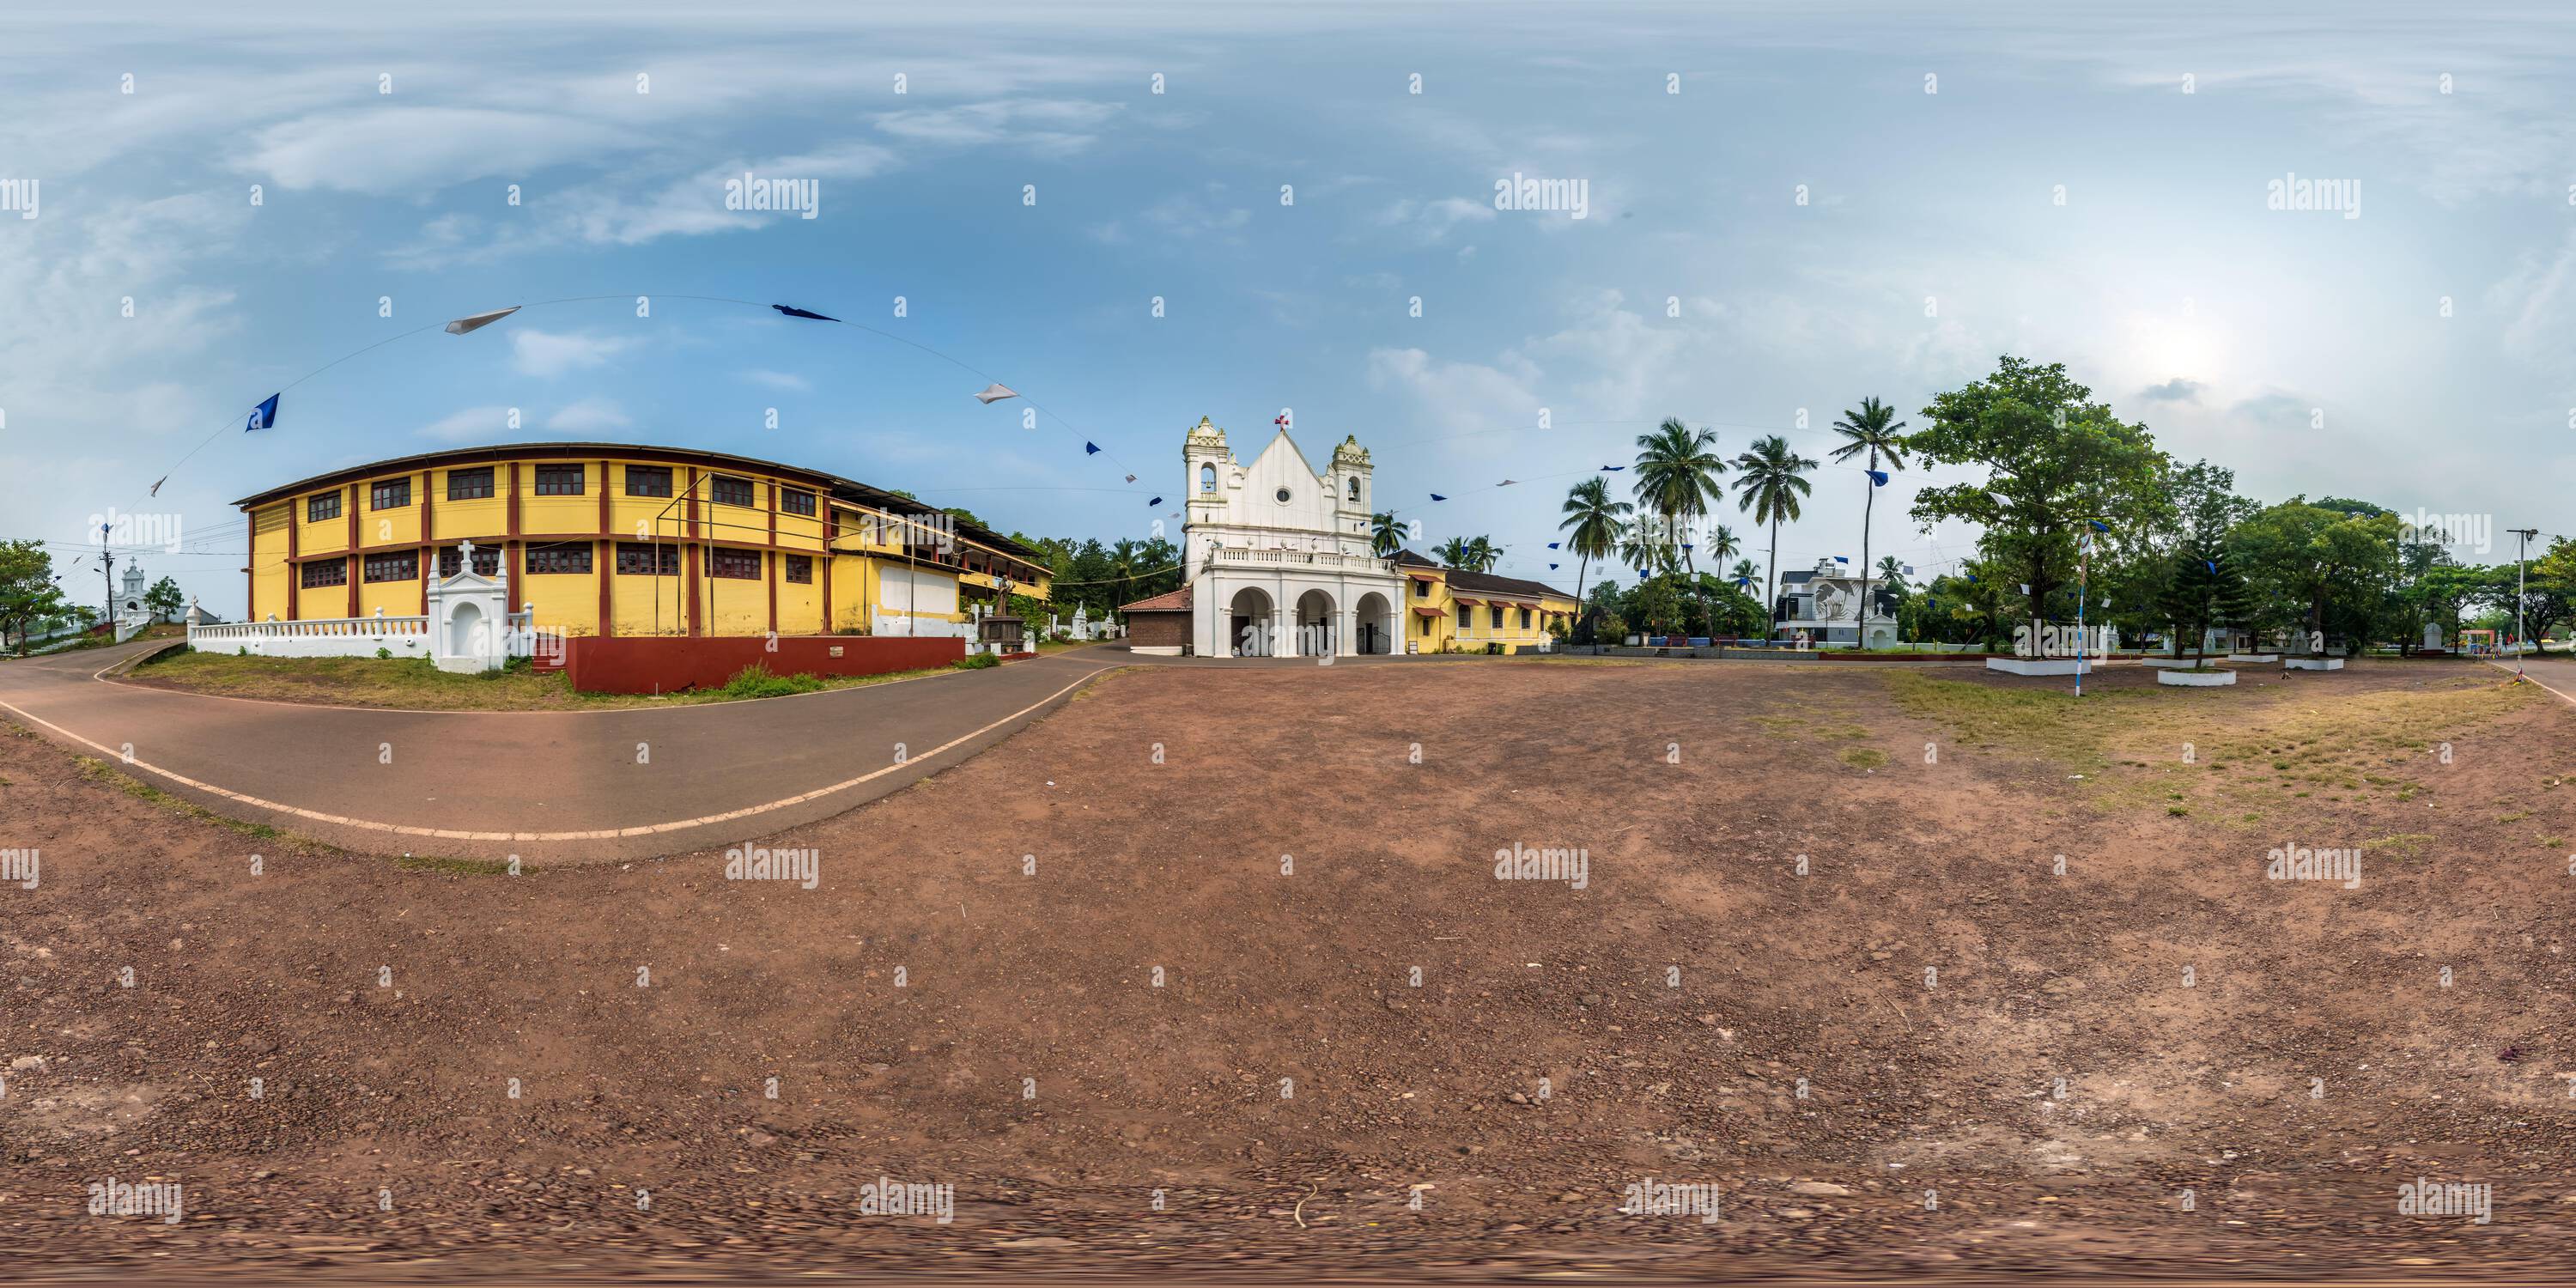 Vue panoramique à 360° de Plein hdri 360 panorama de l'église catholique portugaise dans la jungle parmi les palmiers dans le village tropical indien en projection équirectangulaire avec zénith et